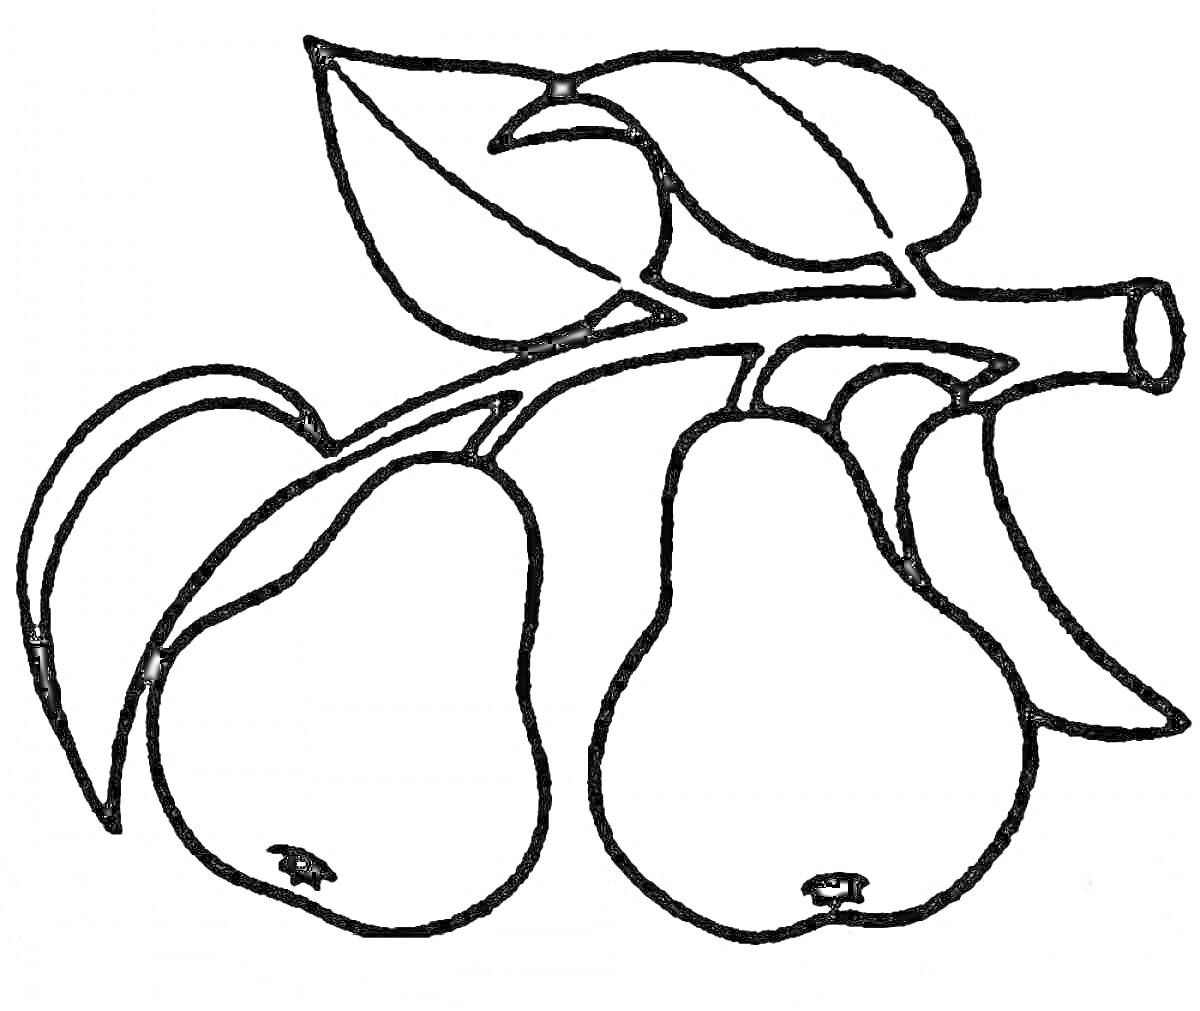 Груша с двумя плодами и листьями на ветке